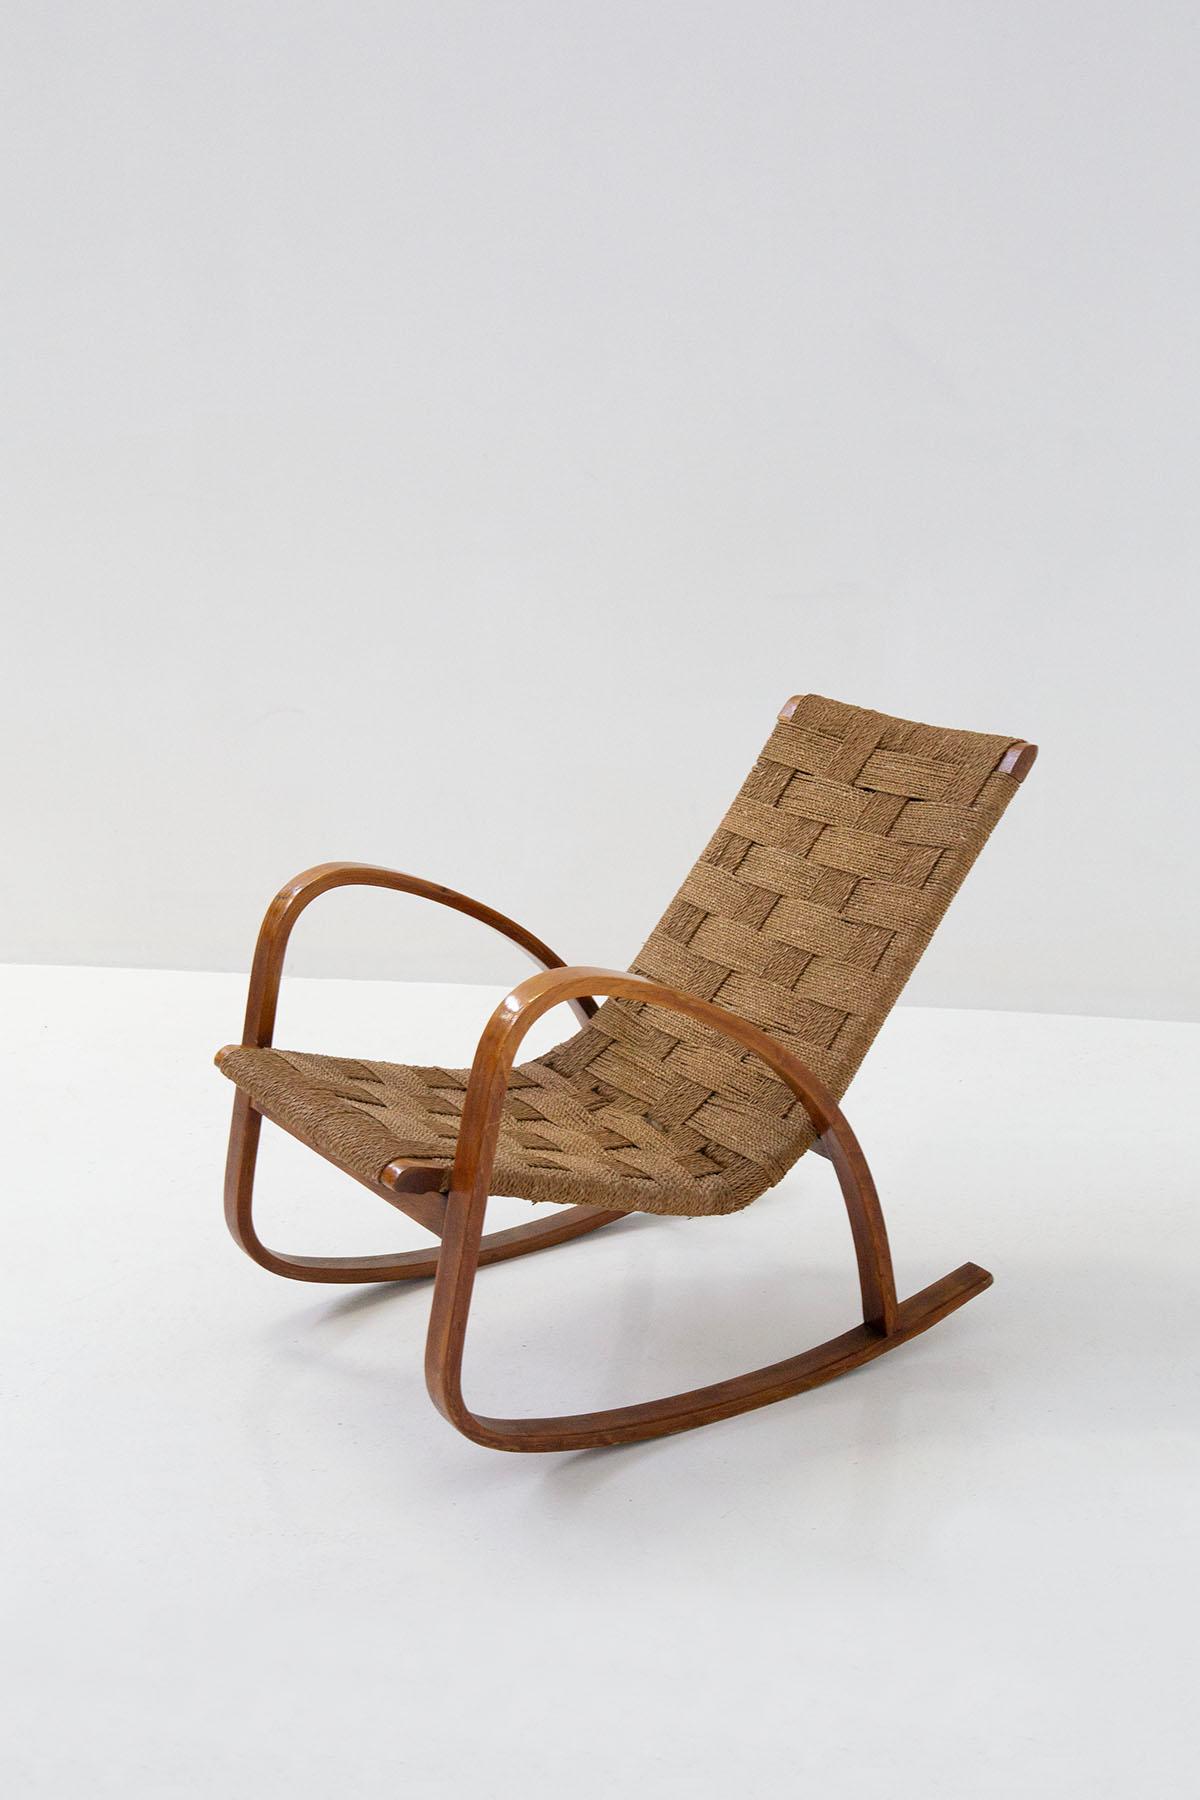 Rare chaise à bascule de la période rationaliste italienne des années 1920. Le fauteuil se situe dans la période européenne du Bauhaus. Le fauteuil est bien construit avec du bois massif qui entoure sa surface. Tandis que l'assise et son dossier